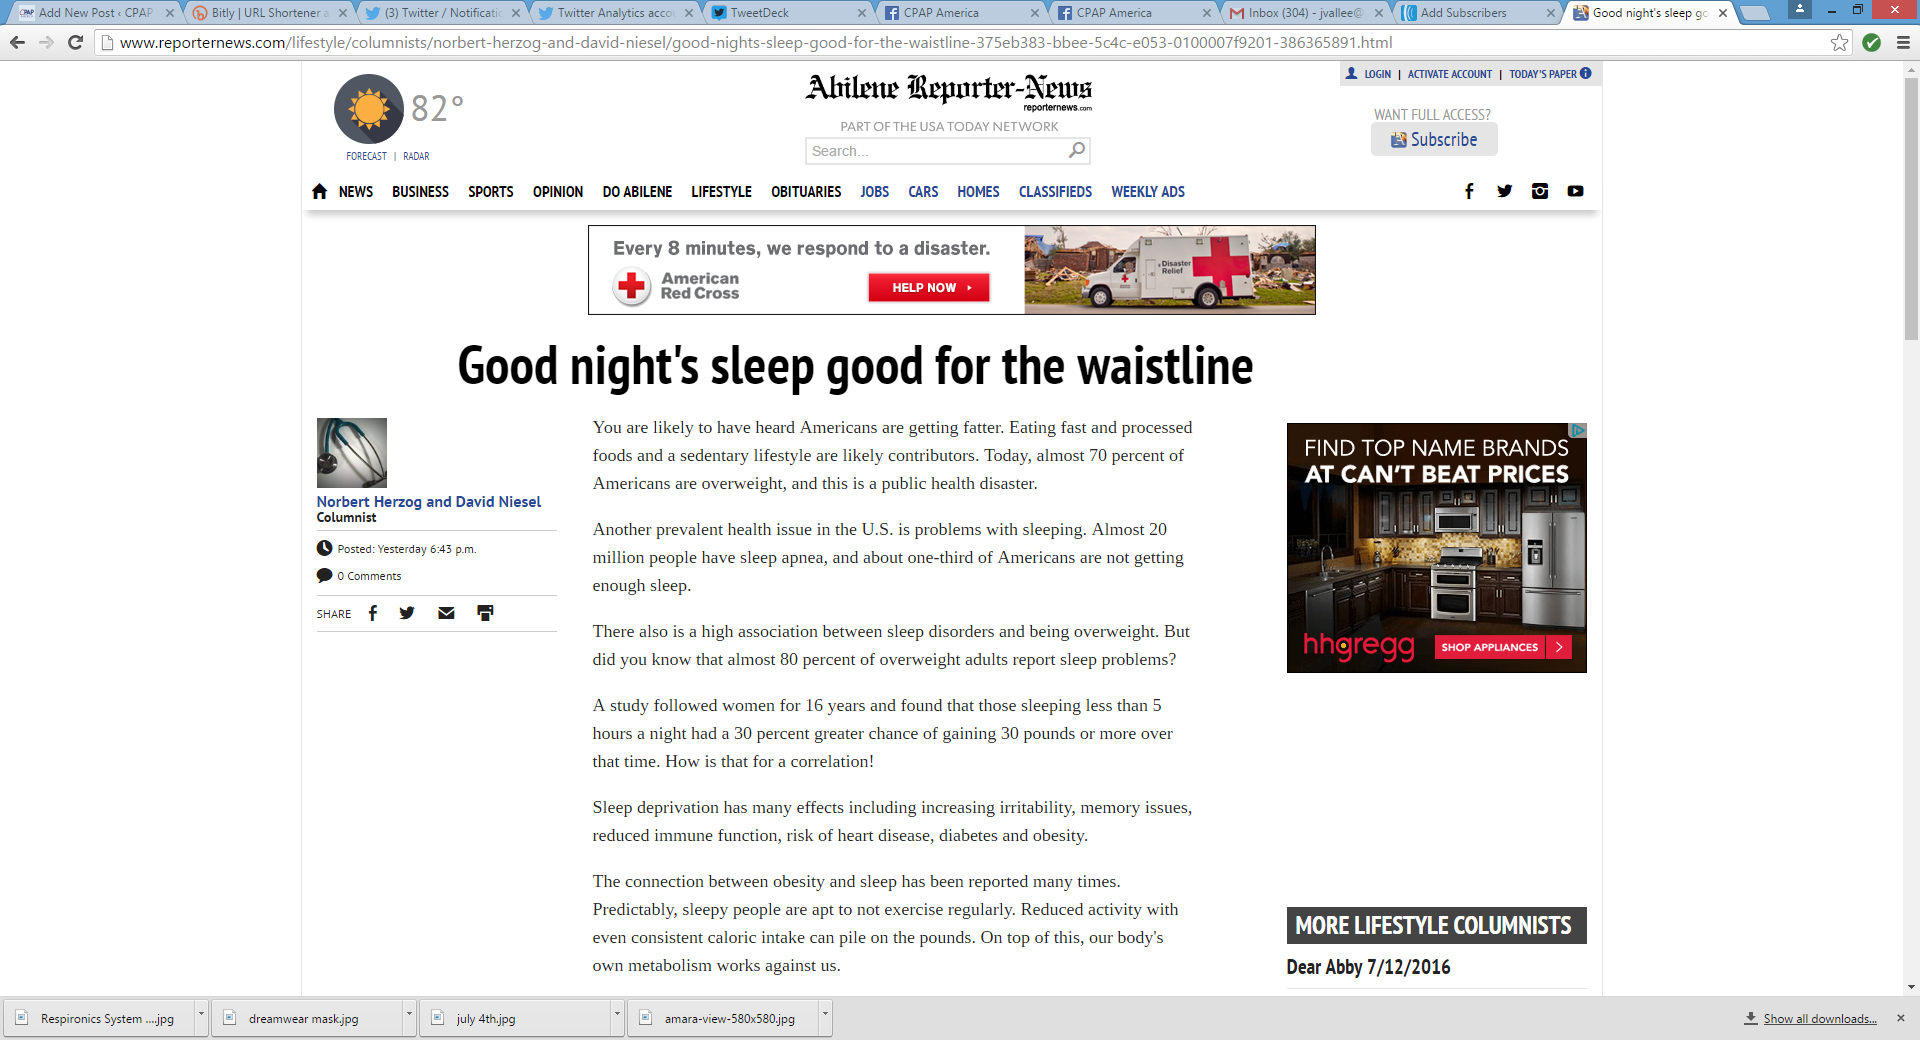 A Good Night's Sleep Can Help Your Waistline